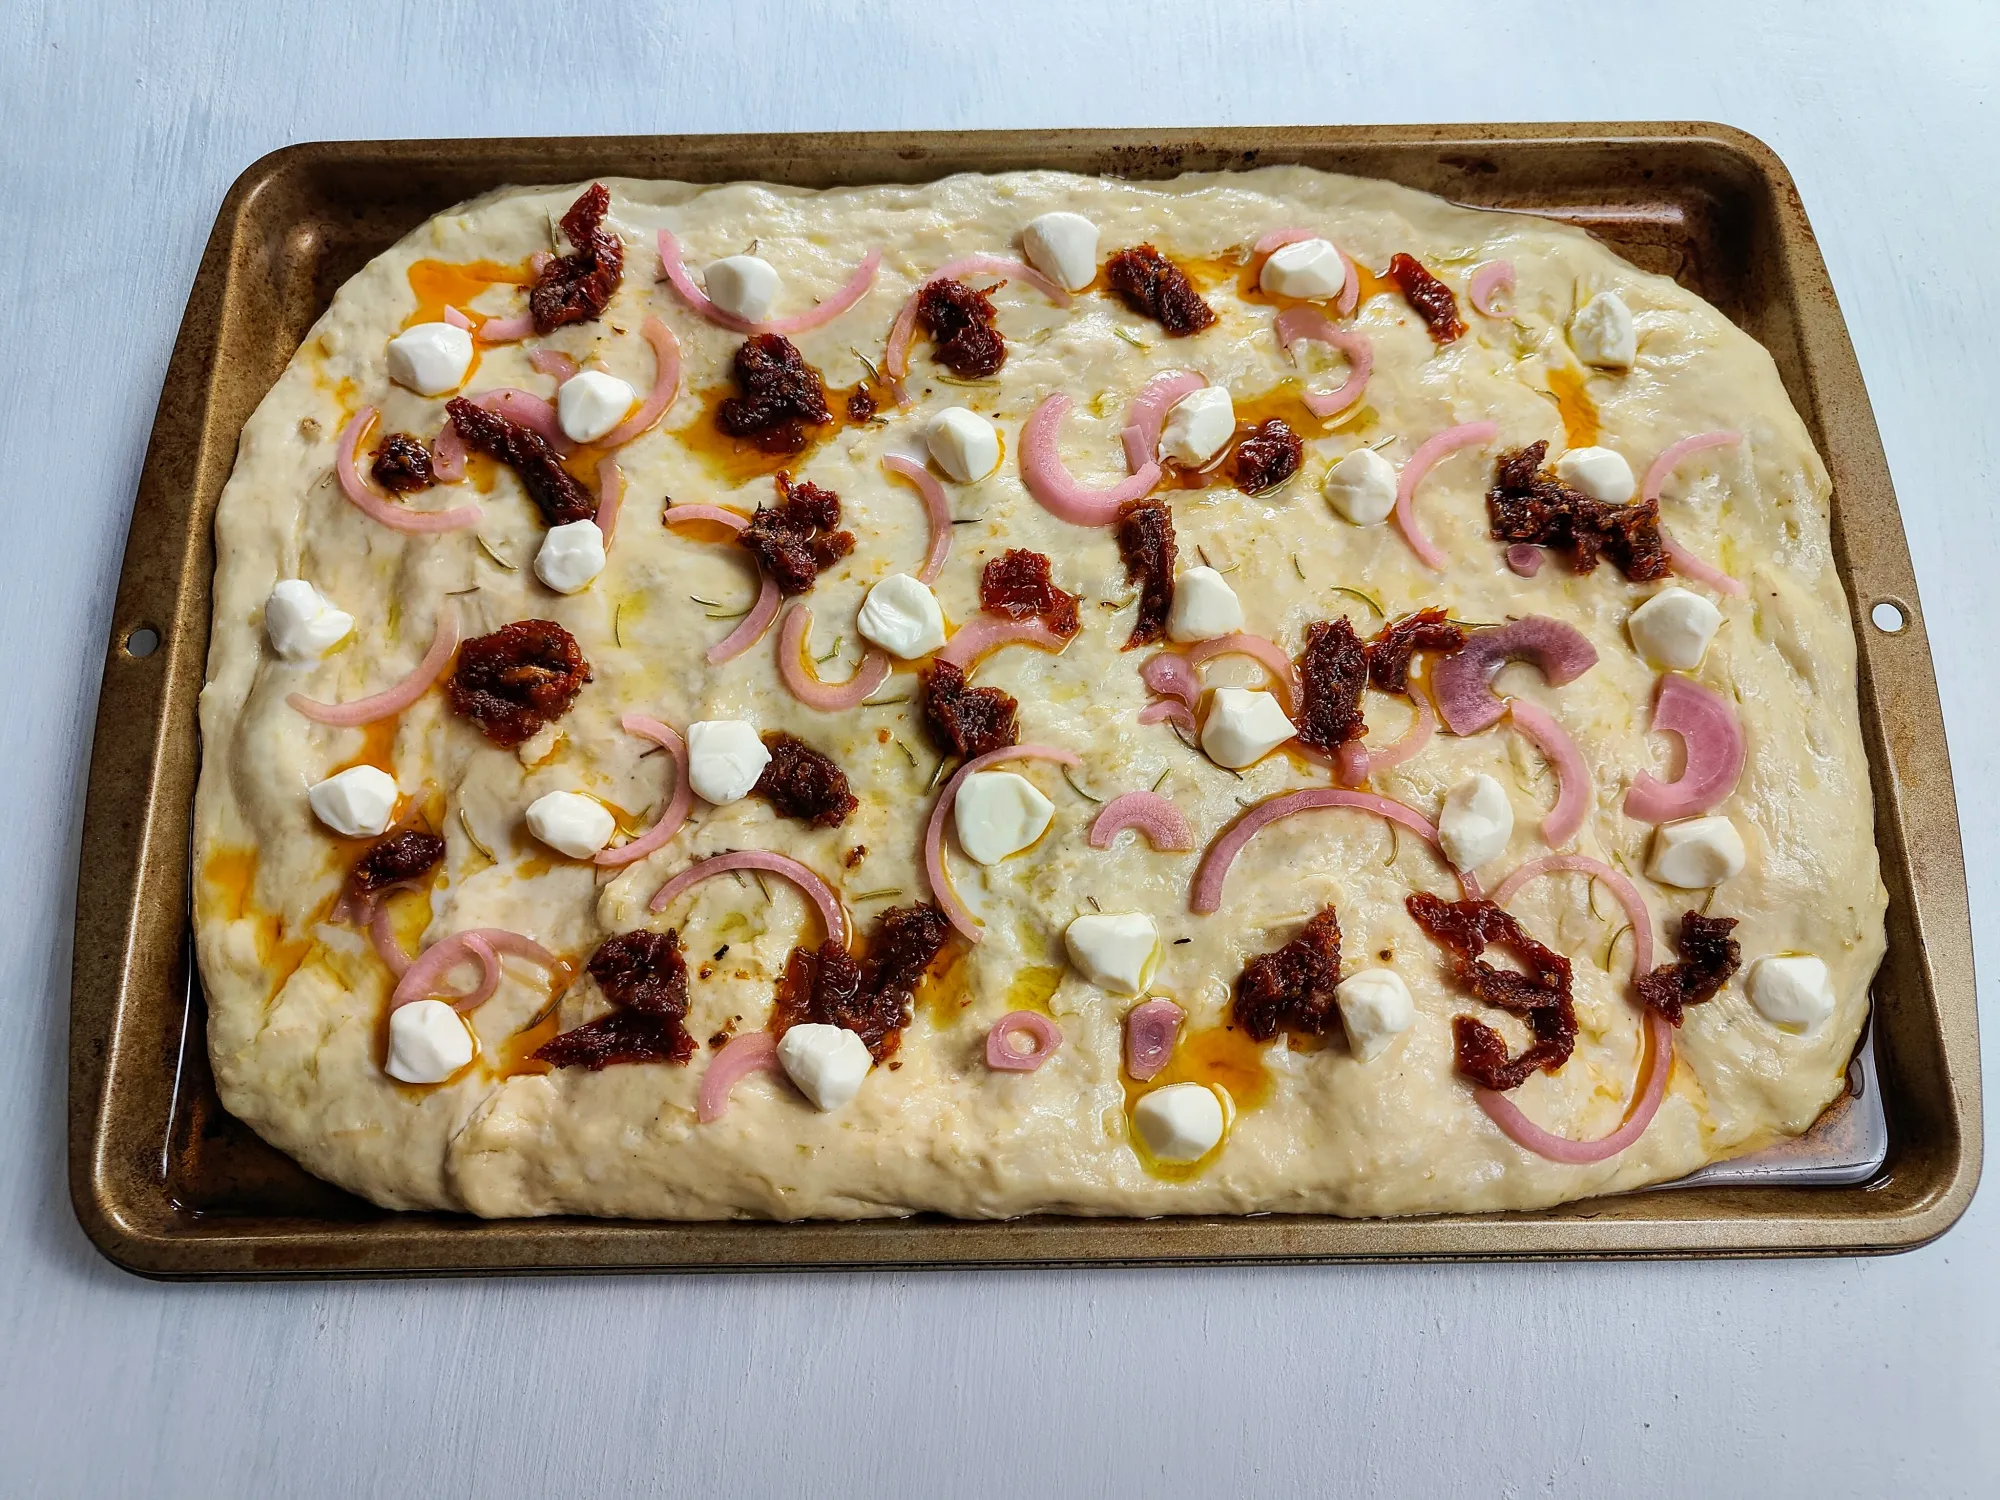 Focaccia dough on a baking sheet